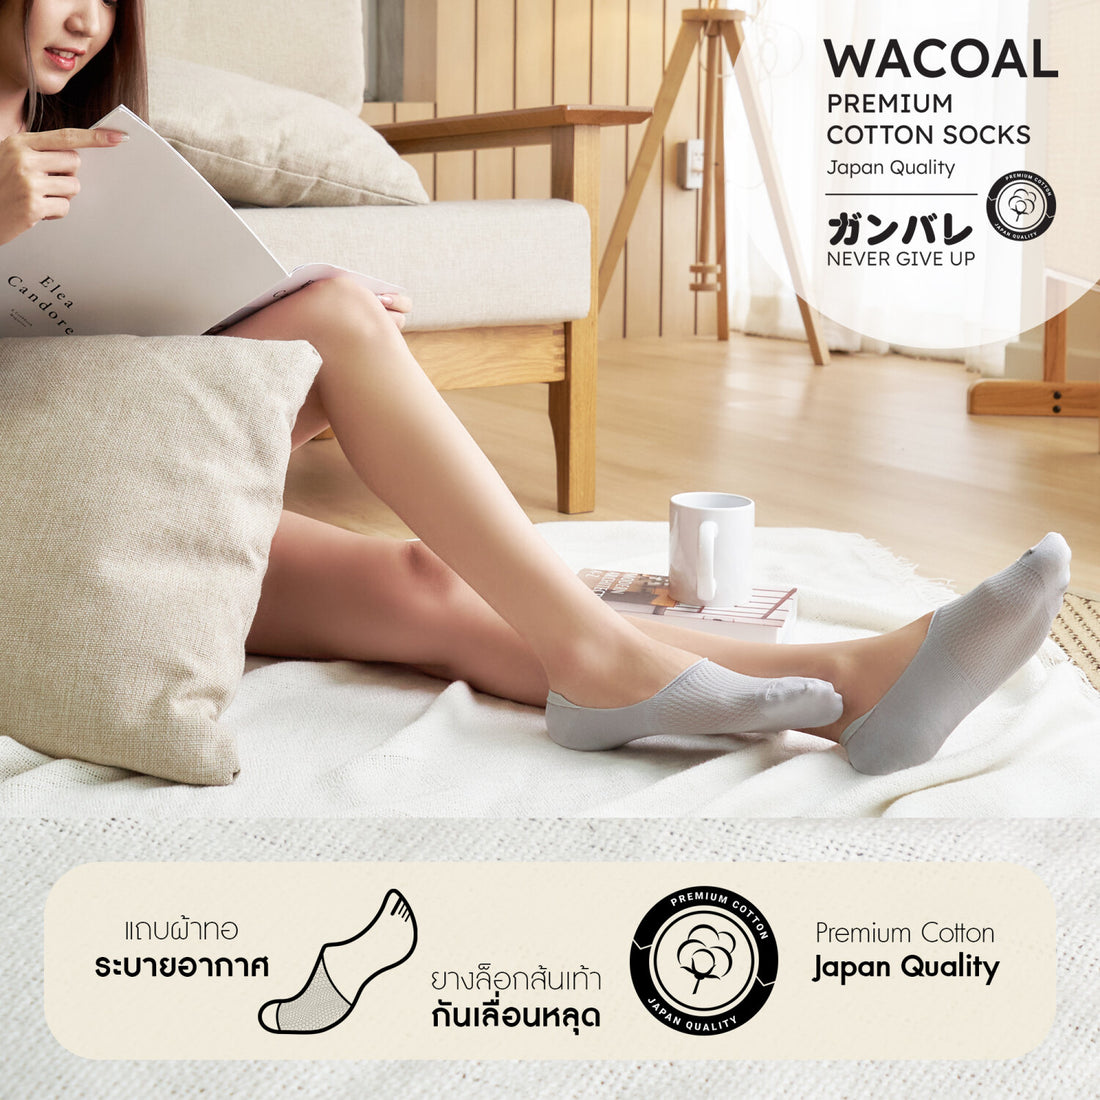 ถุงเท้าซ่อนข้อ ถุงเท้าข้อเว้า Premium Cotton Socks Selected by Wacoal Set 3 pcs รุ่น WW110400 สีดำ (BL)